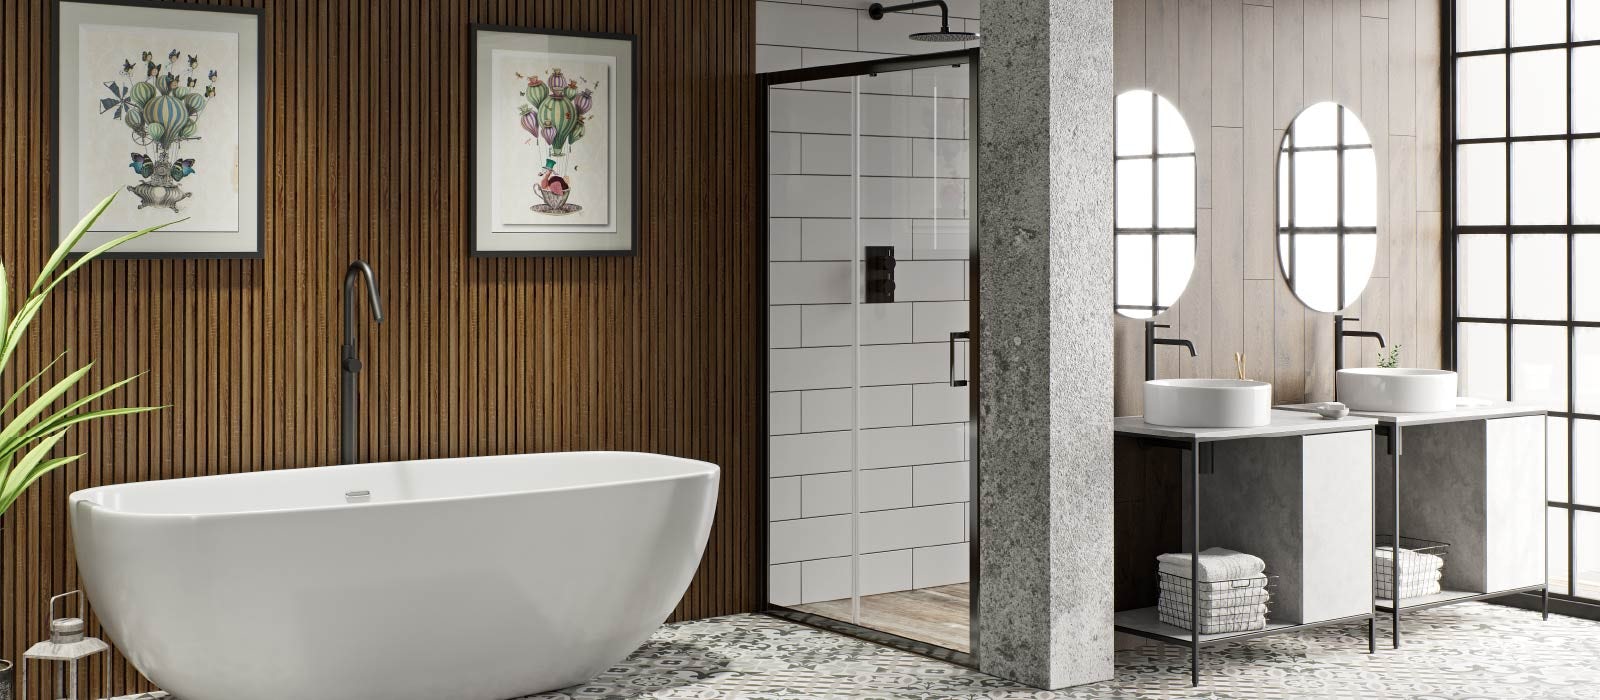 New Modern Stylish Design Elements Matt Black Bath Side Table Bathroom  Accessory